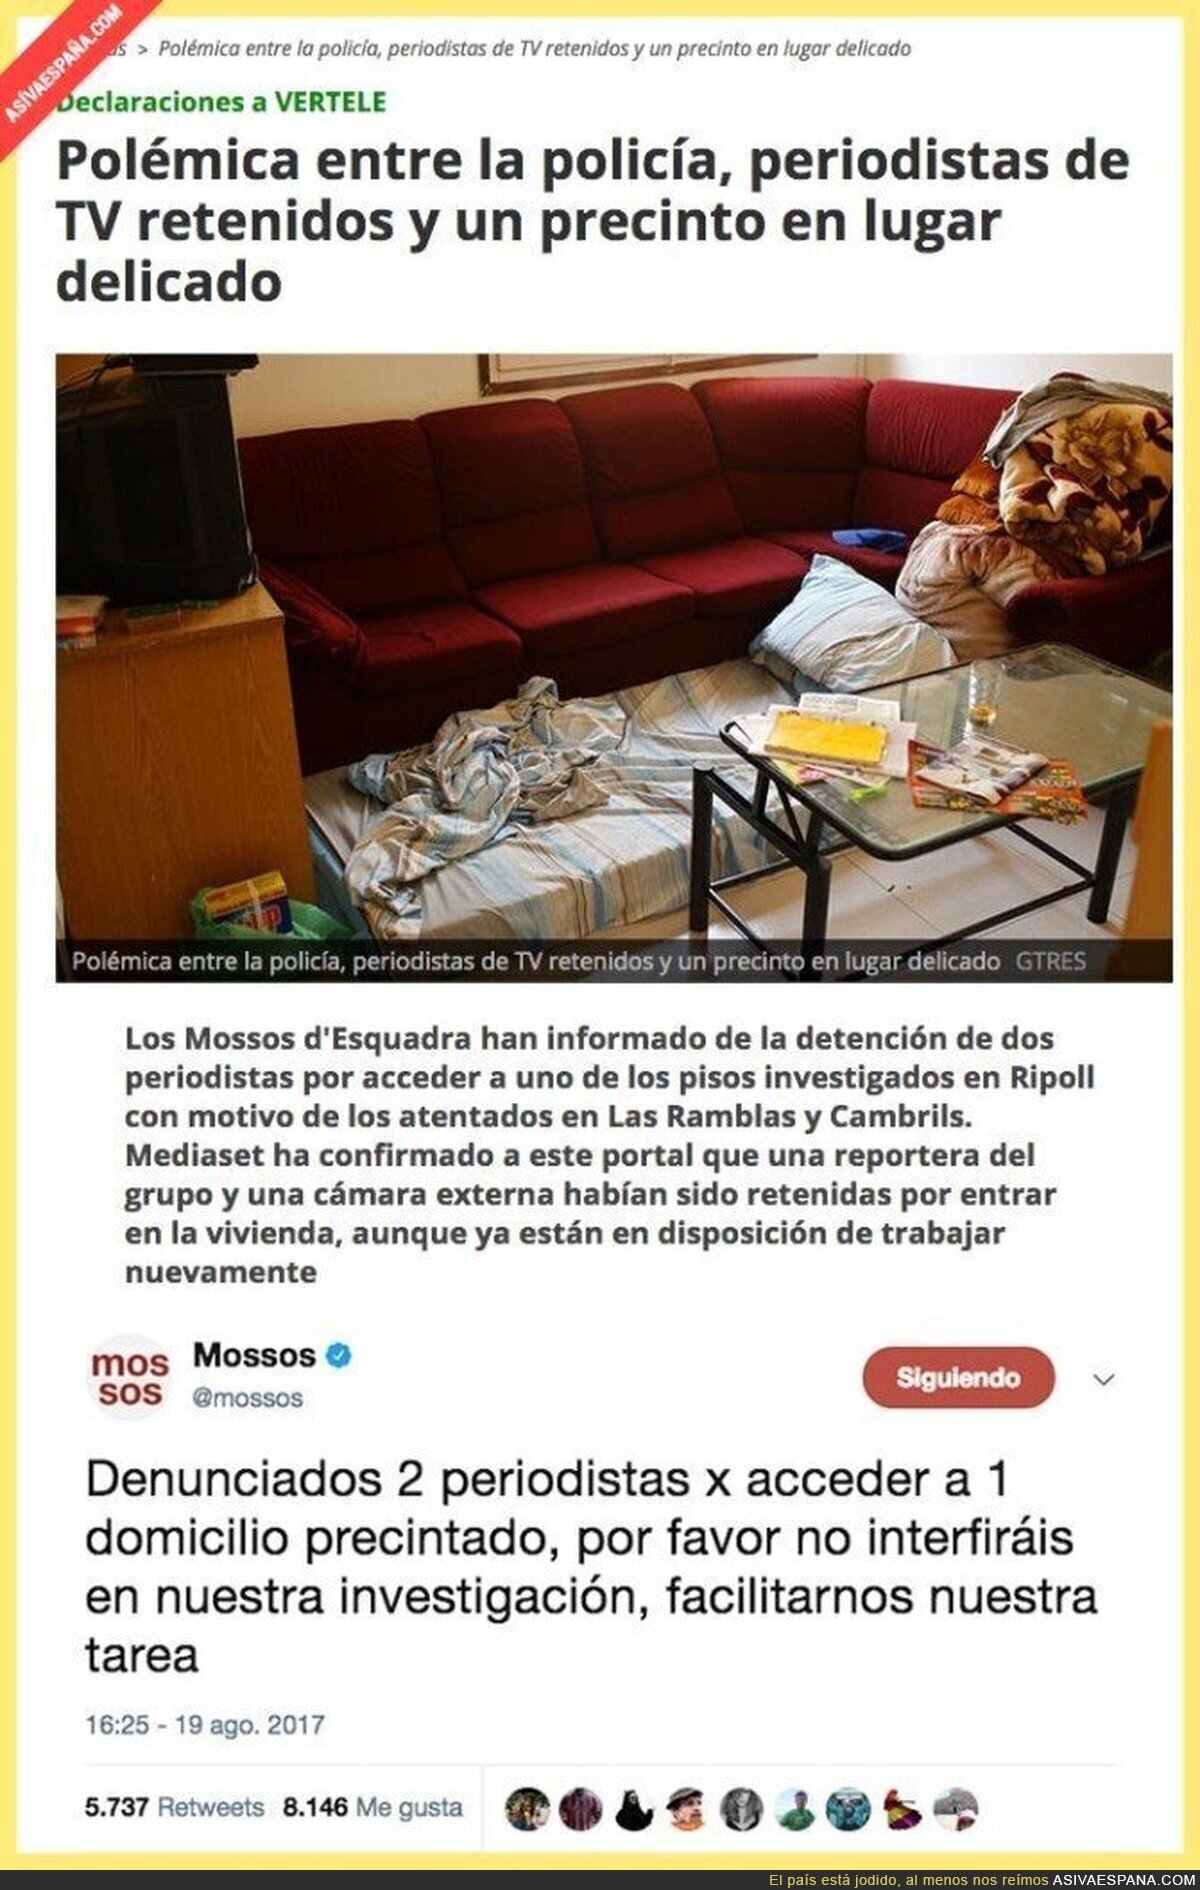 Periodistas de Antena 3 y Telecinco denunciados por entrar al piso de los terroristas y grabar imáge